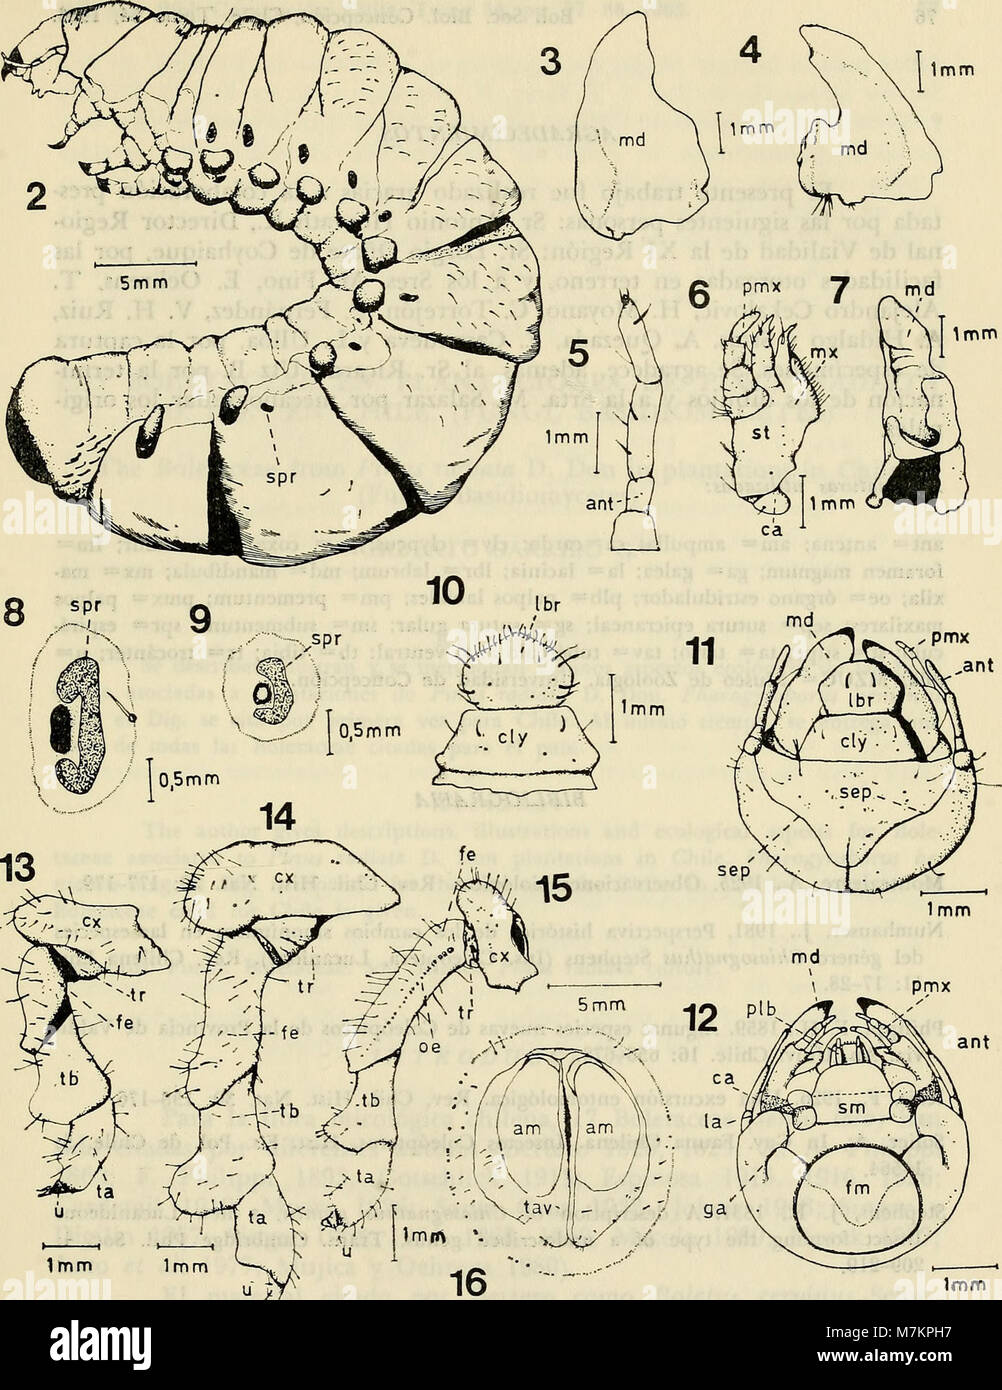 Boletim de la Sociedad de Biología de Concepción (1983) (20201427869) Foto Stock